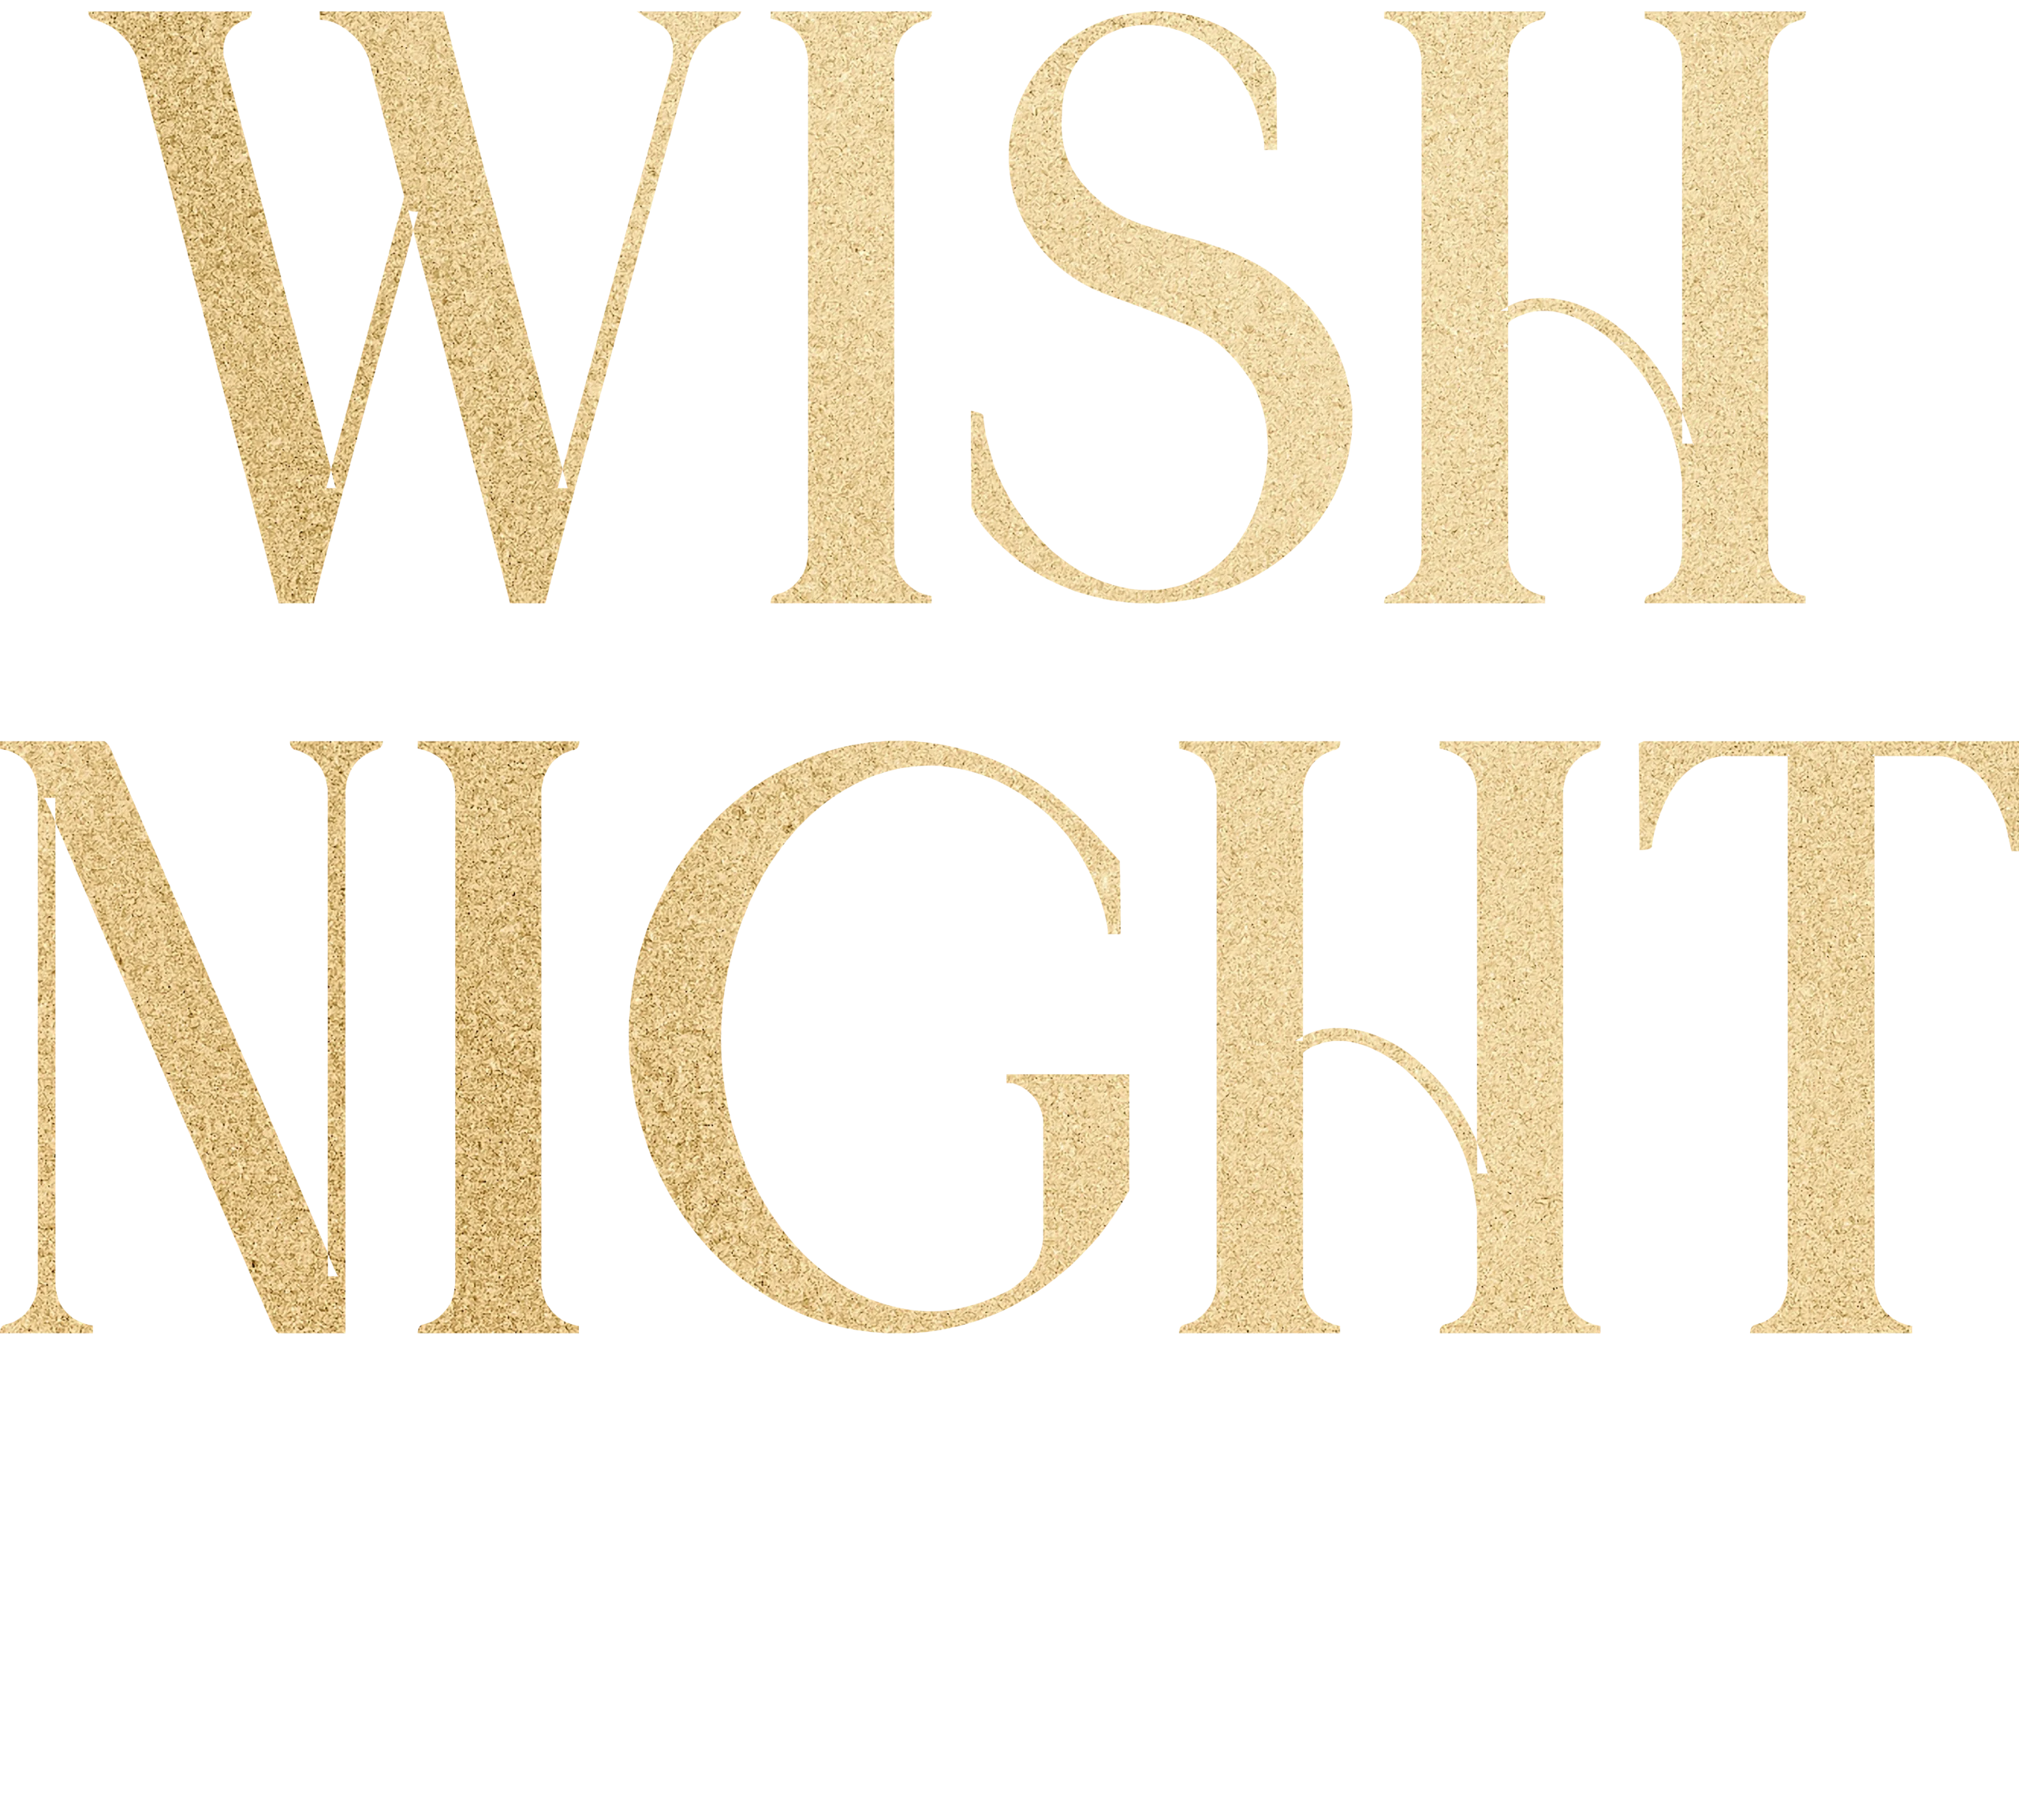 Wish Night Logo